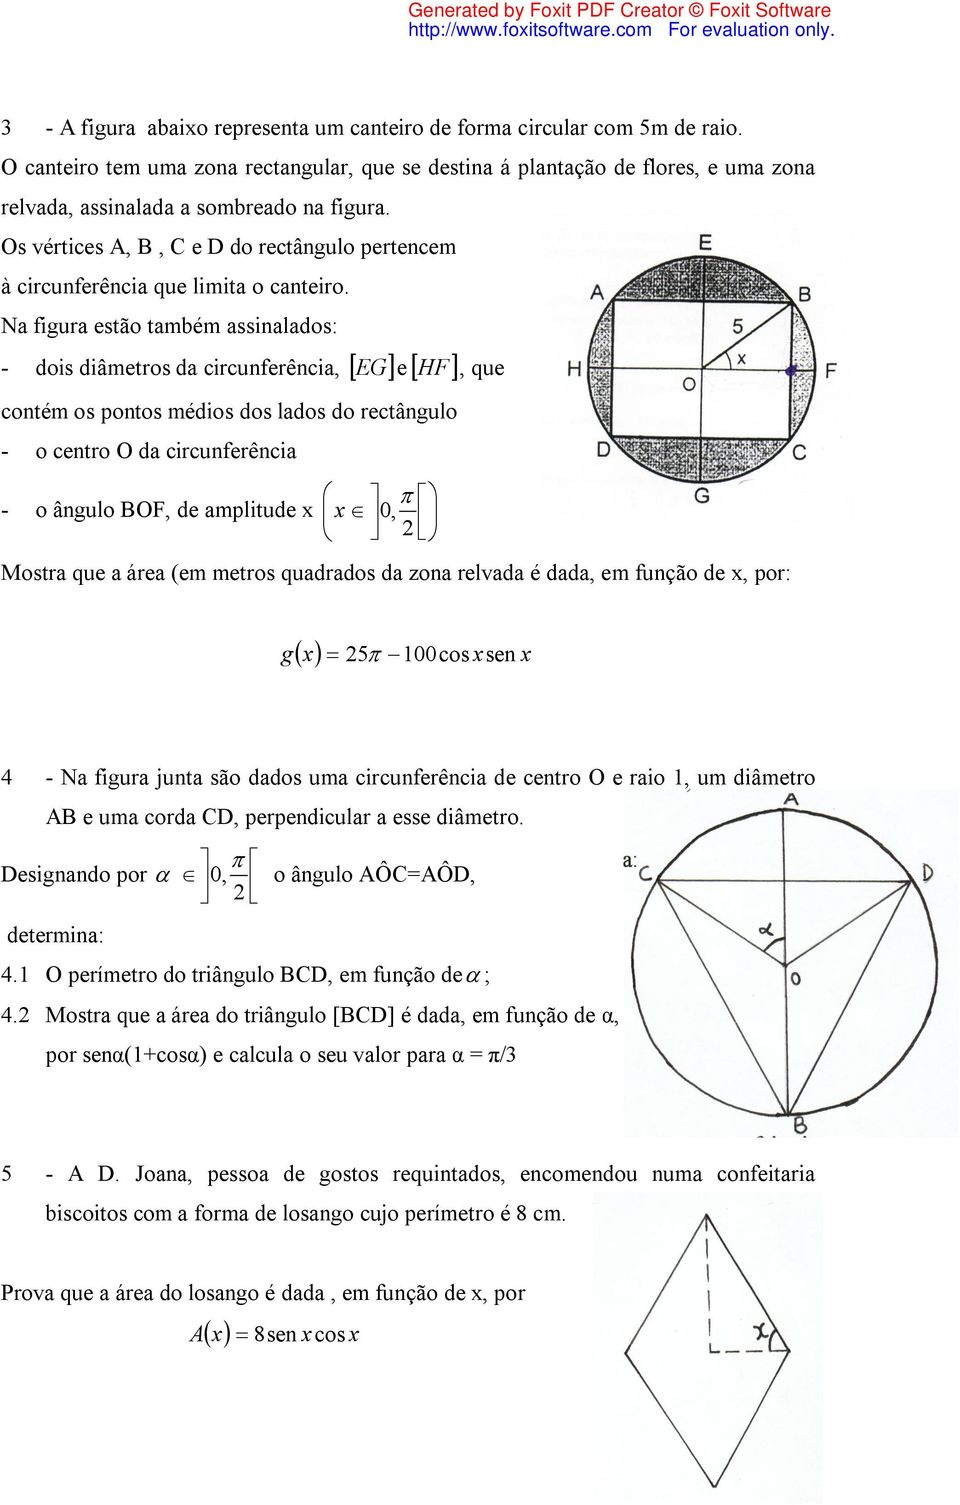 Os vértices A, B, C e D do rectângulo pertencem à circunferência que limita o canteiro.